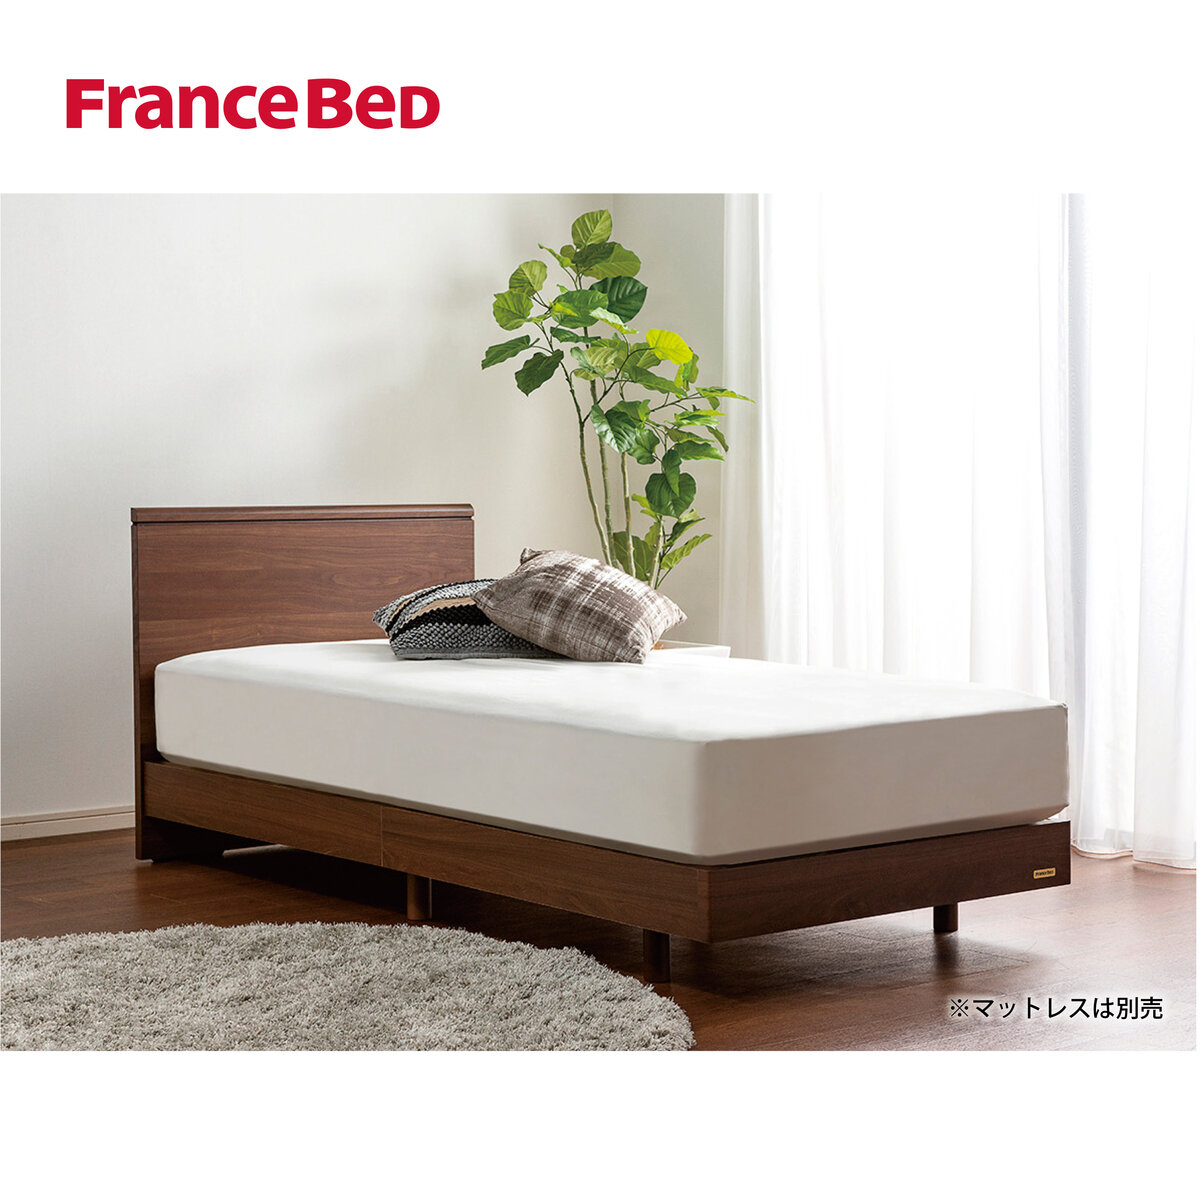 フランスベッド シングル ベッドフレーム レイチェル | Costco Japan